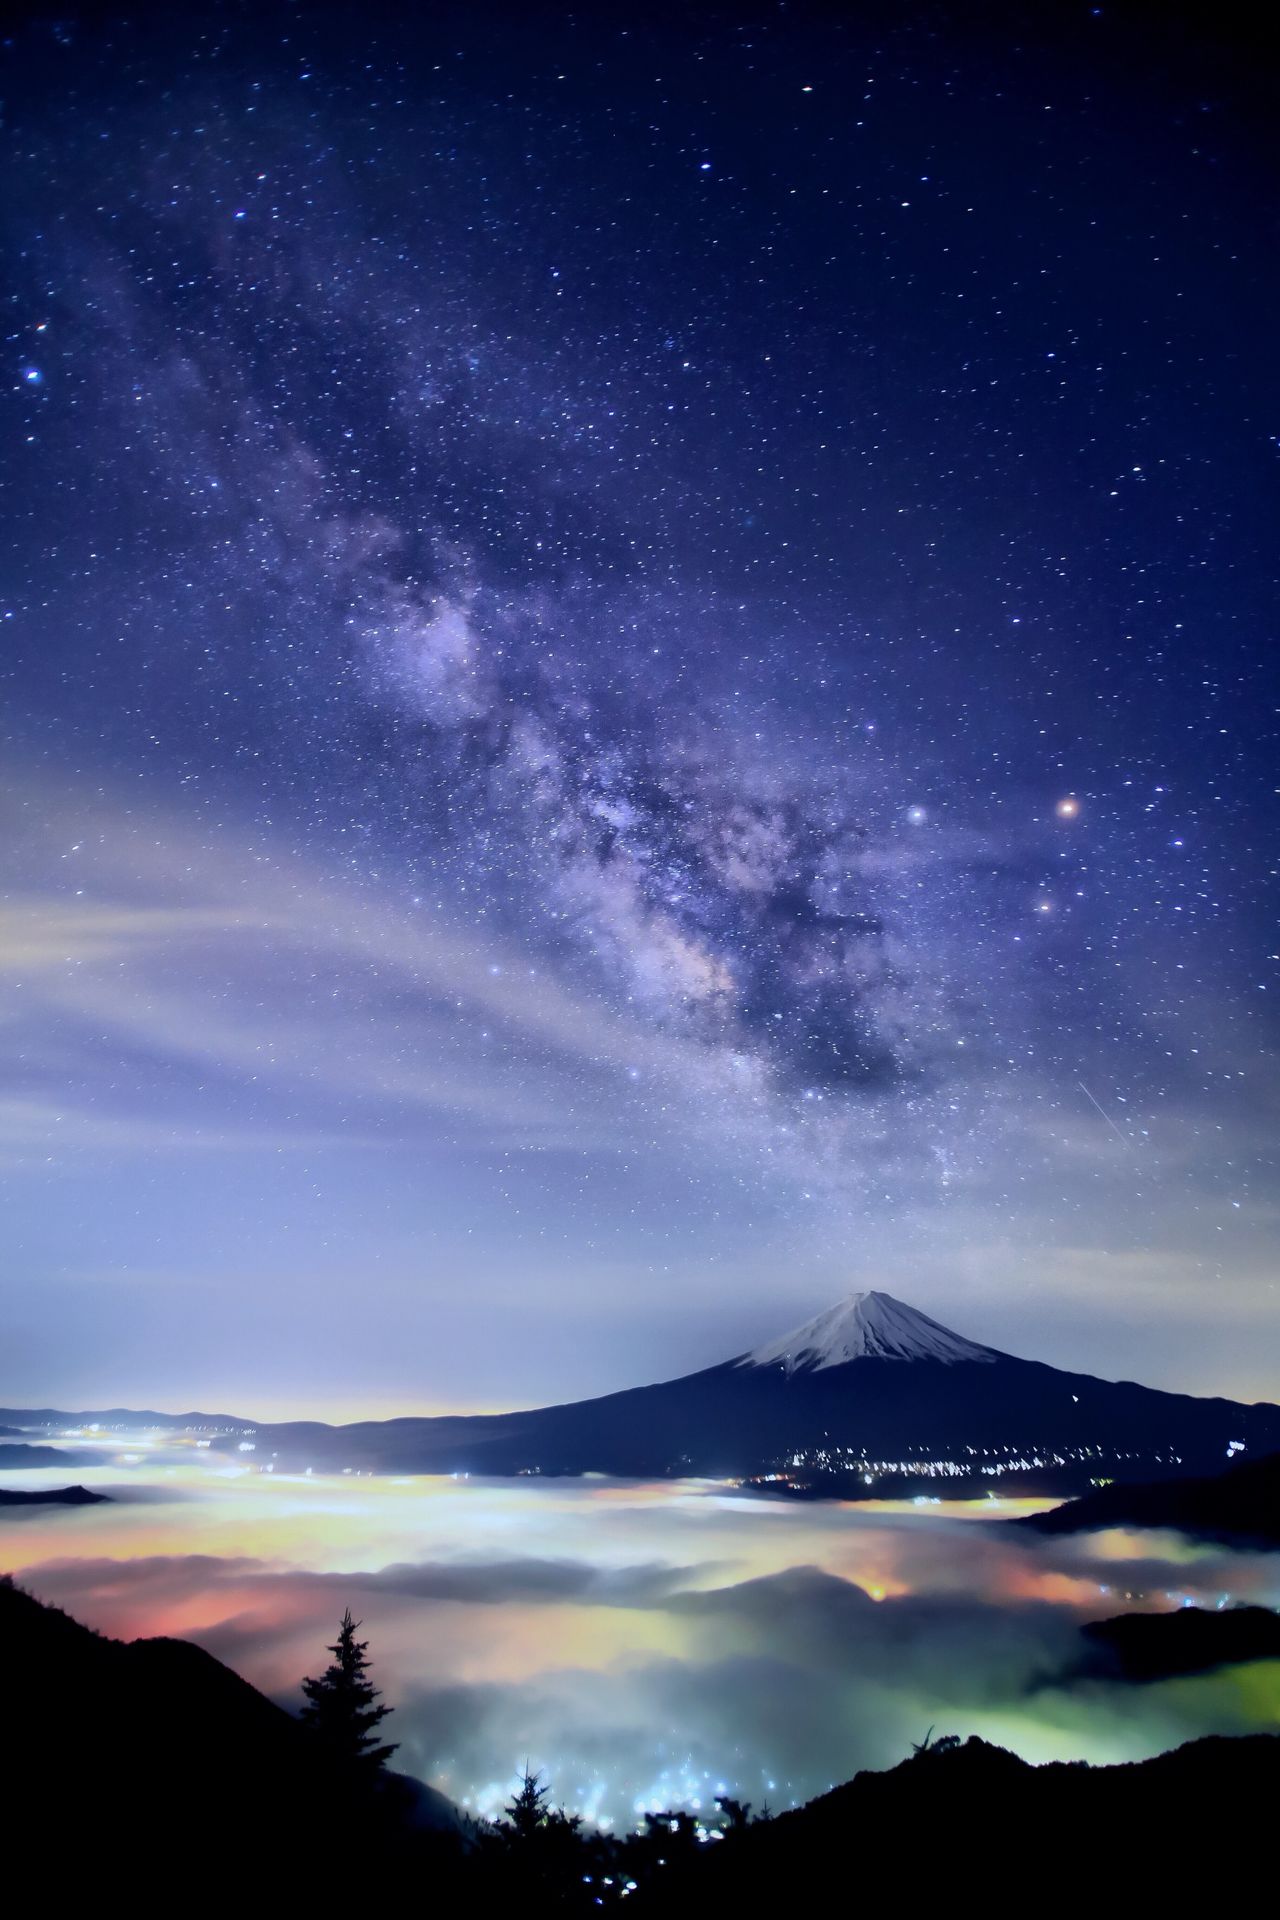 橋向攝影作品的星空之美已有定論。富士山與銀河，以及映在雲海中如夢似幻的城市燈光完美地融為一體（圖片：橋向真）